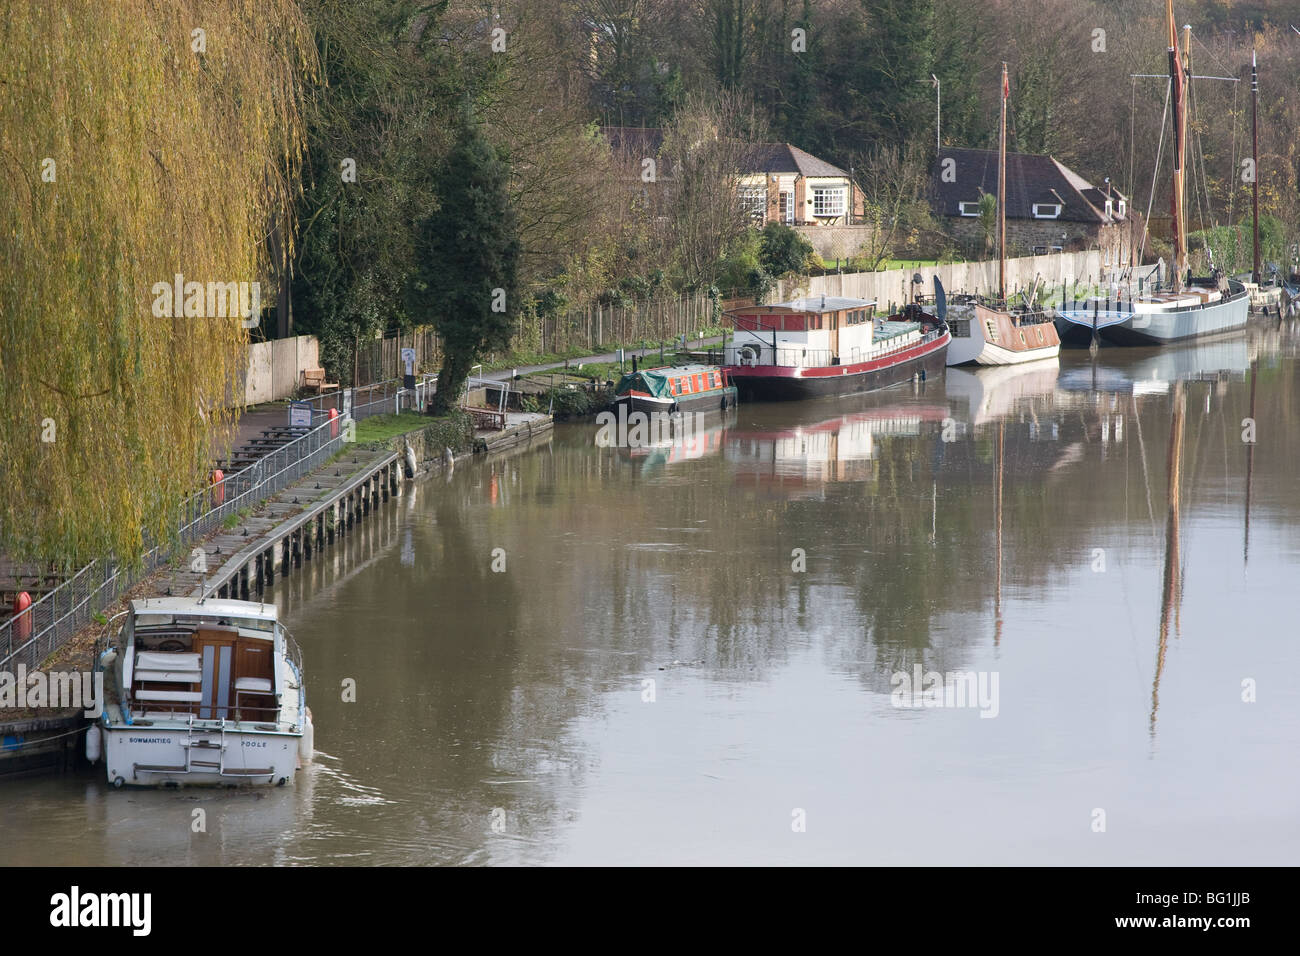 Ocio barco río Medway kent Foto de stock